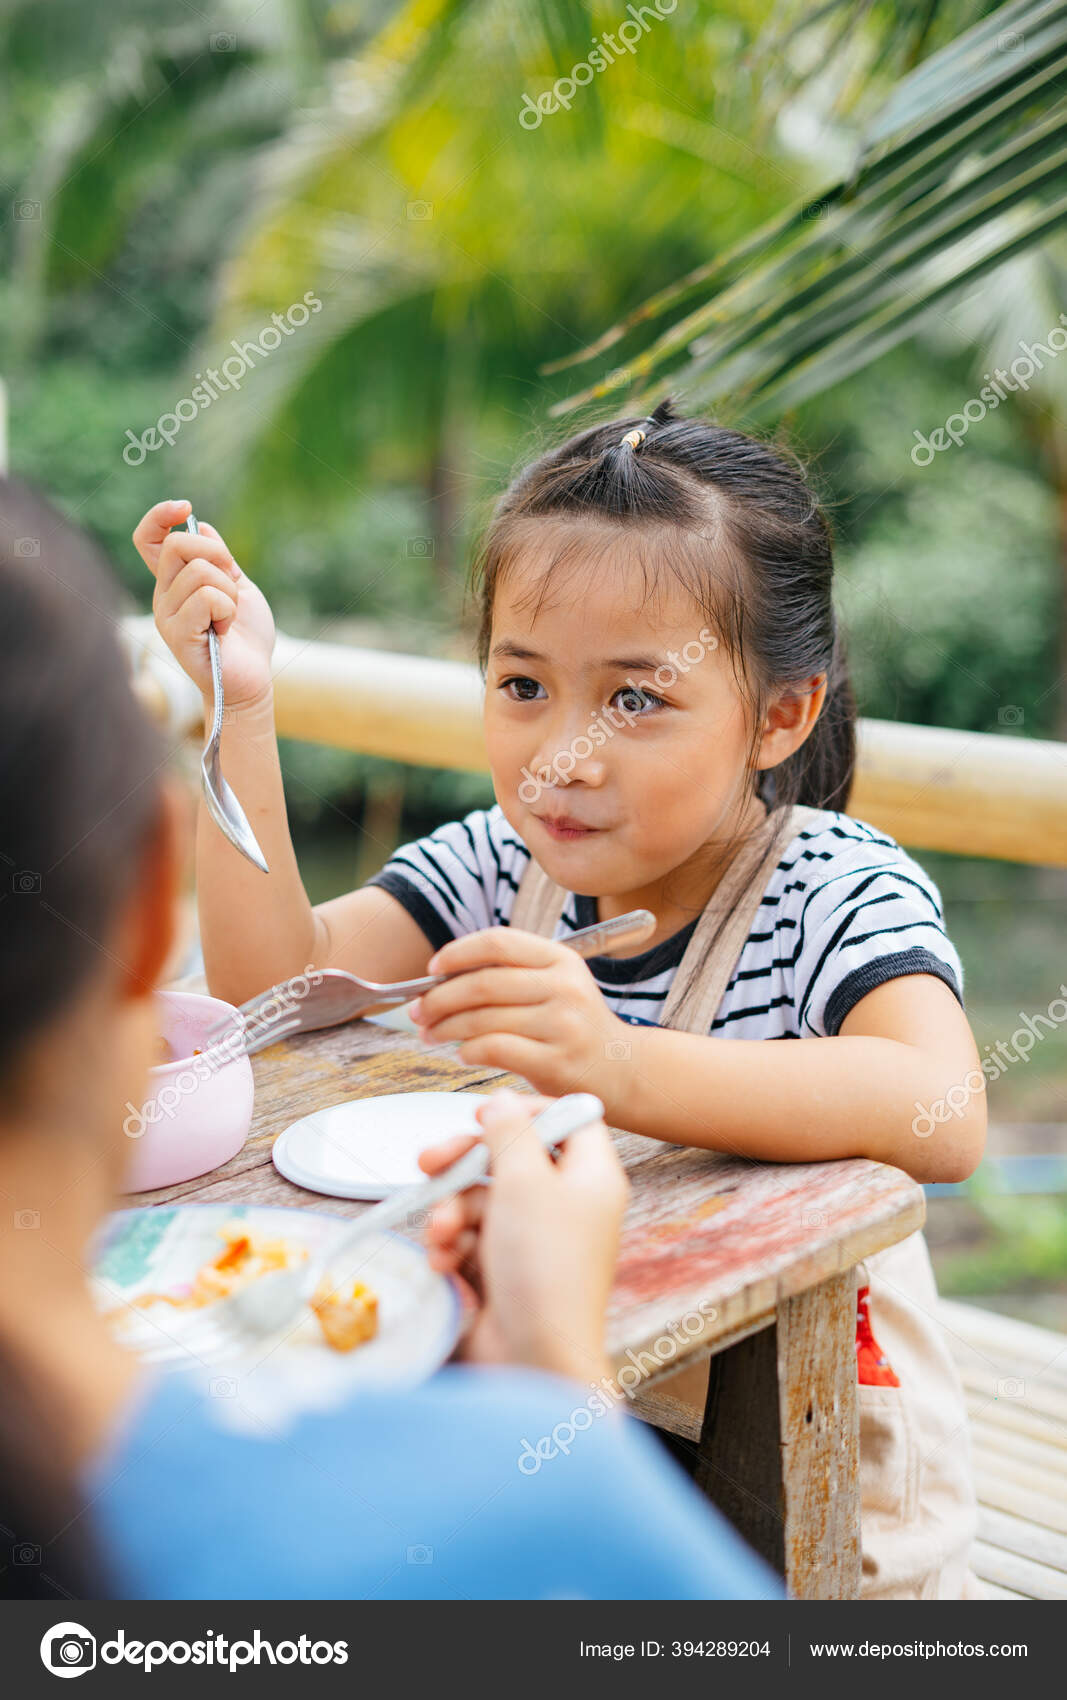 小女孩大口吃饭的图片-图库-五毛网